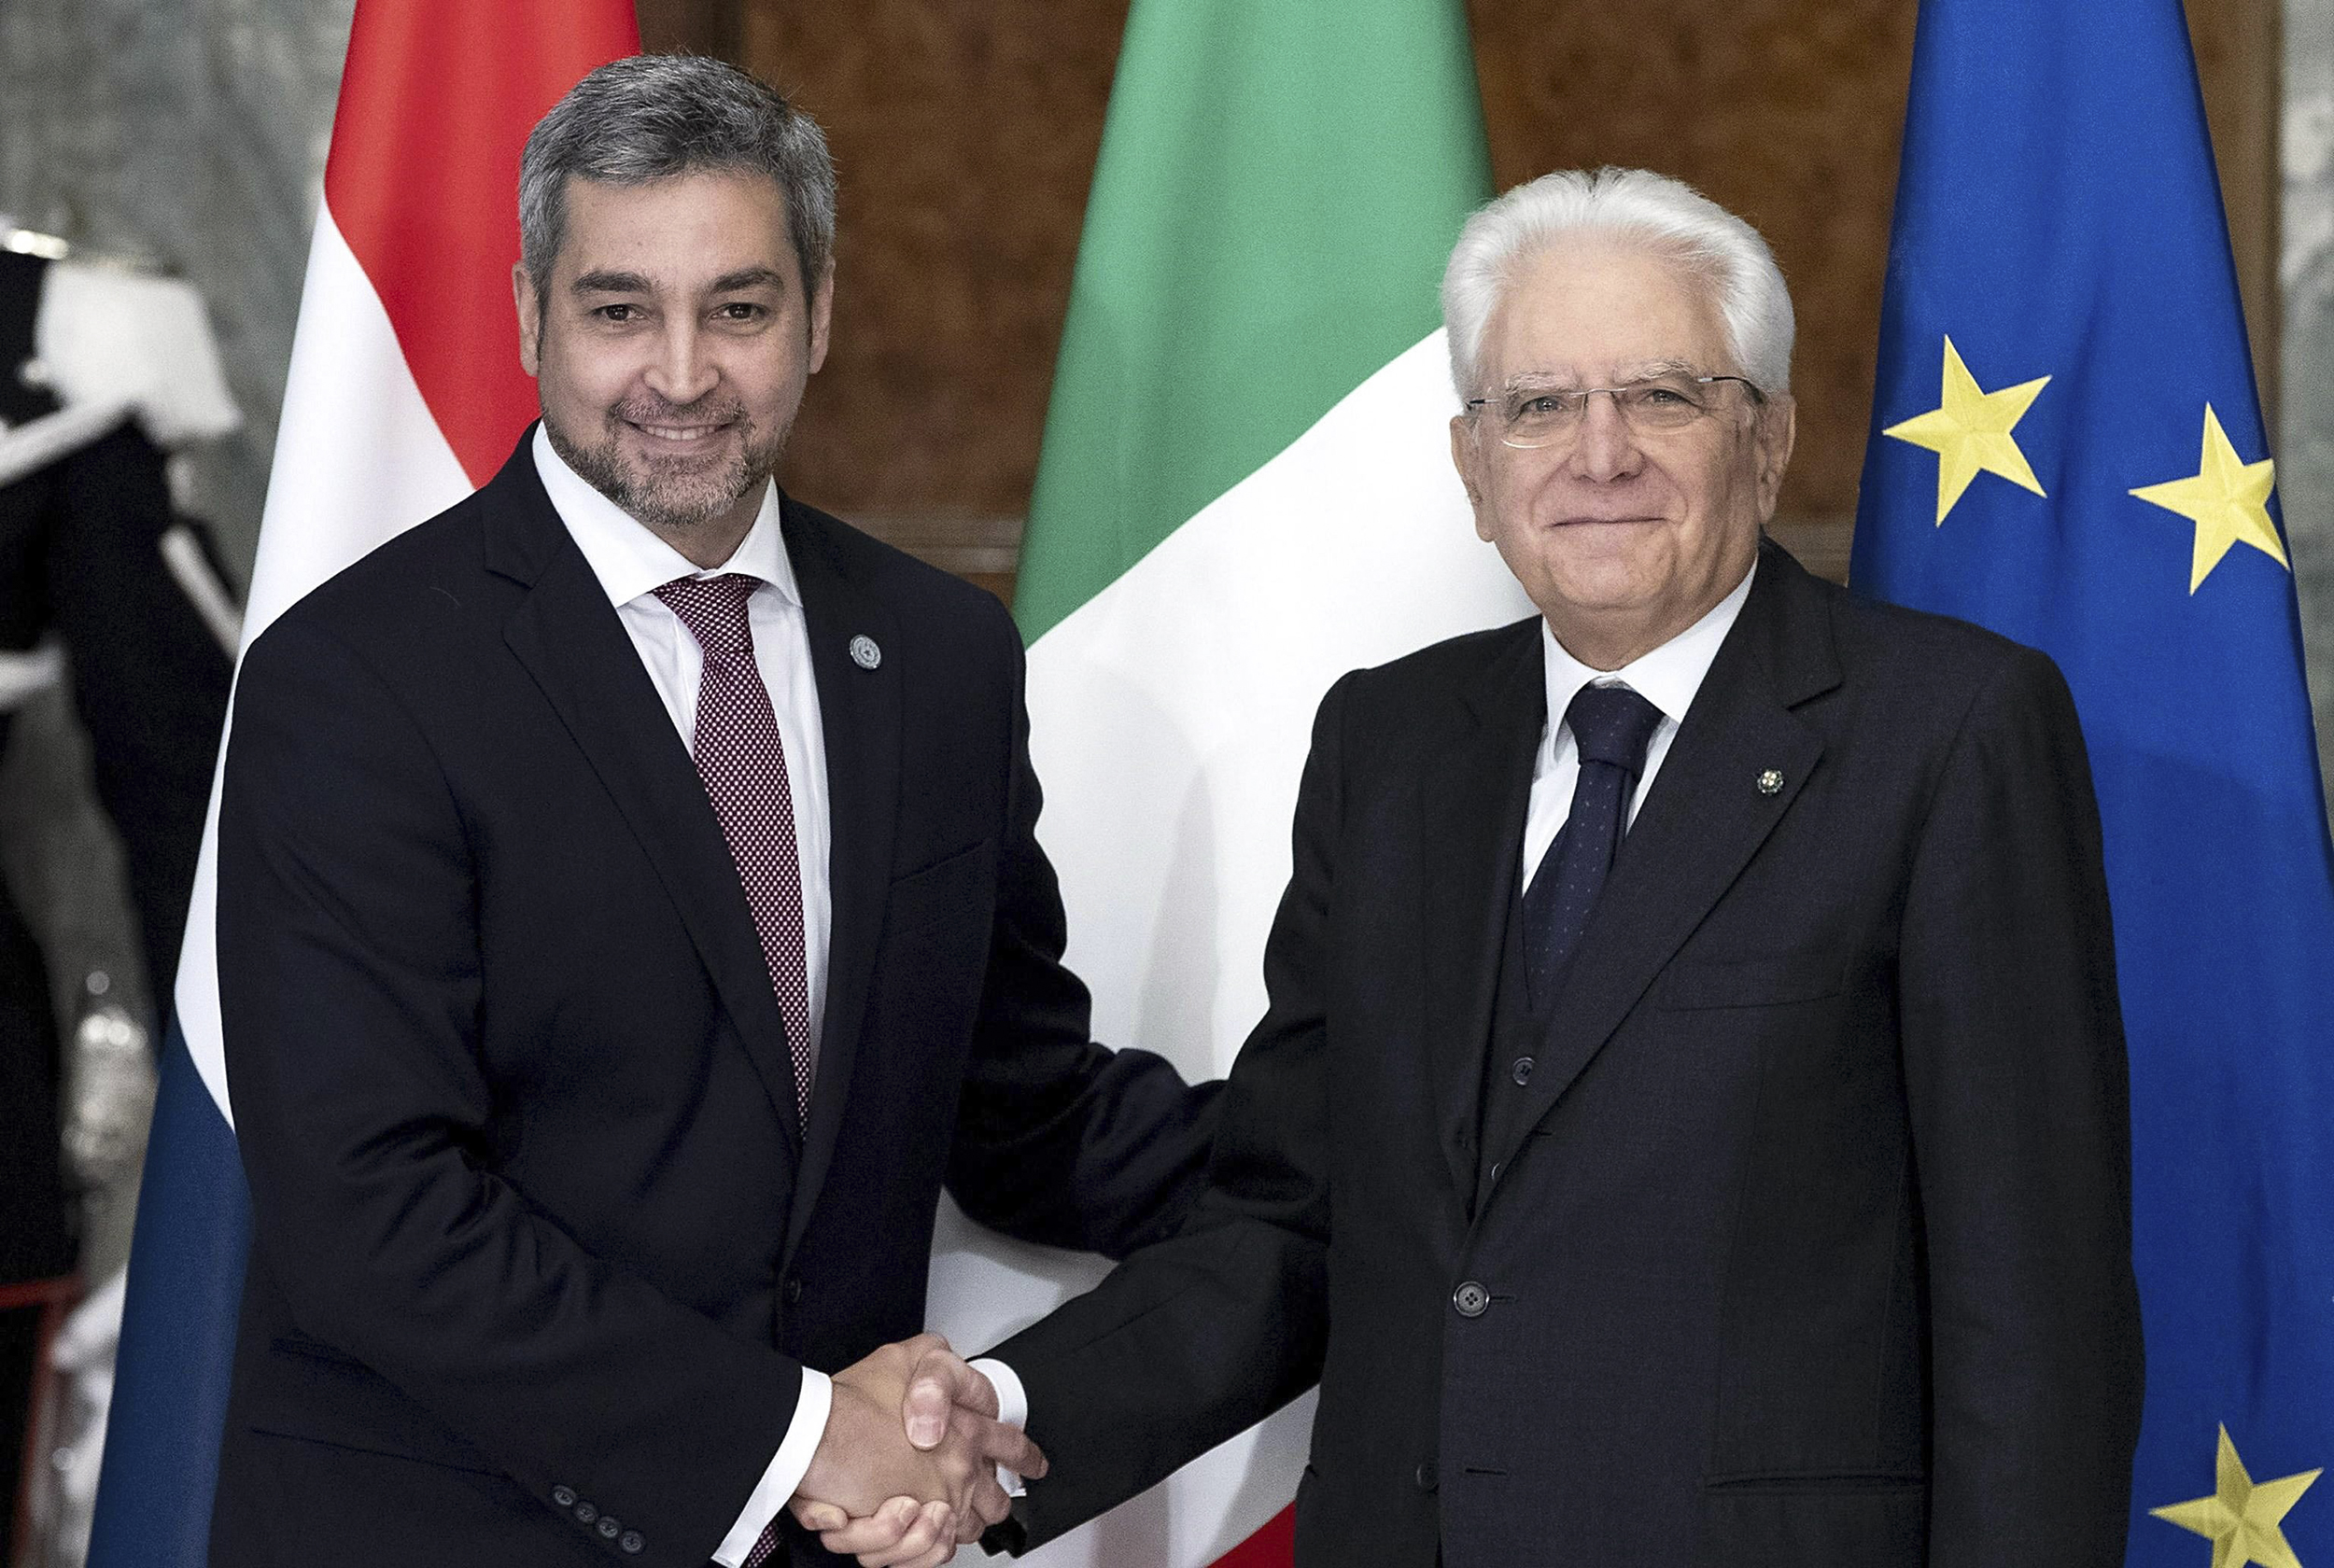 El Jefe de Estado invitó al Presidente de Italia a visitar el Paraguay